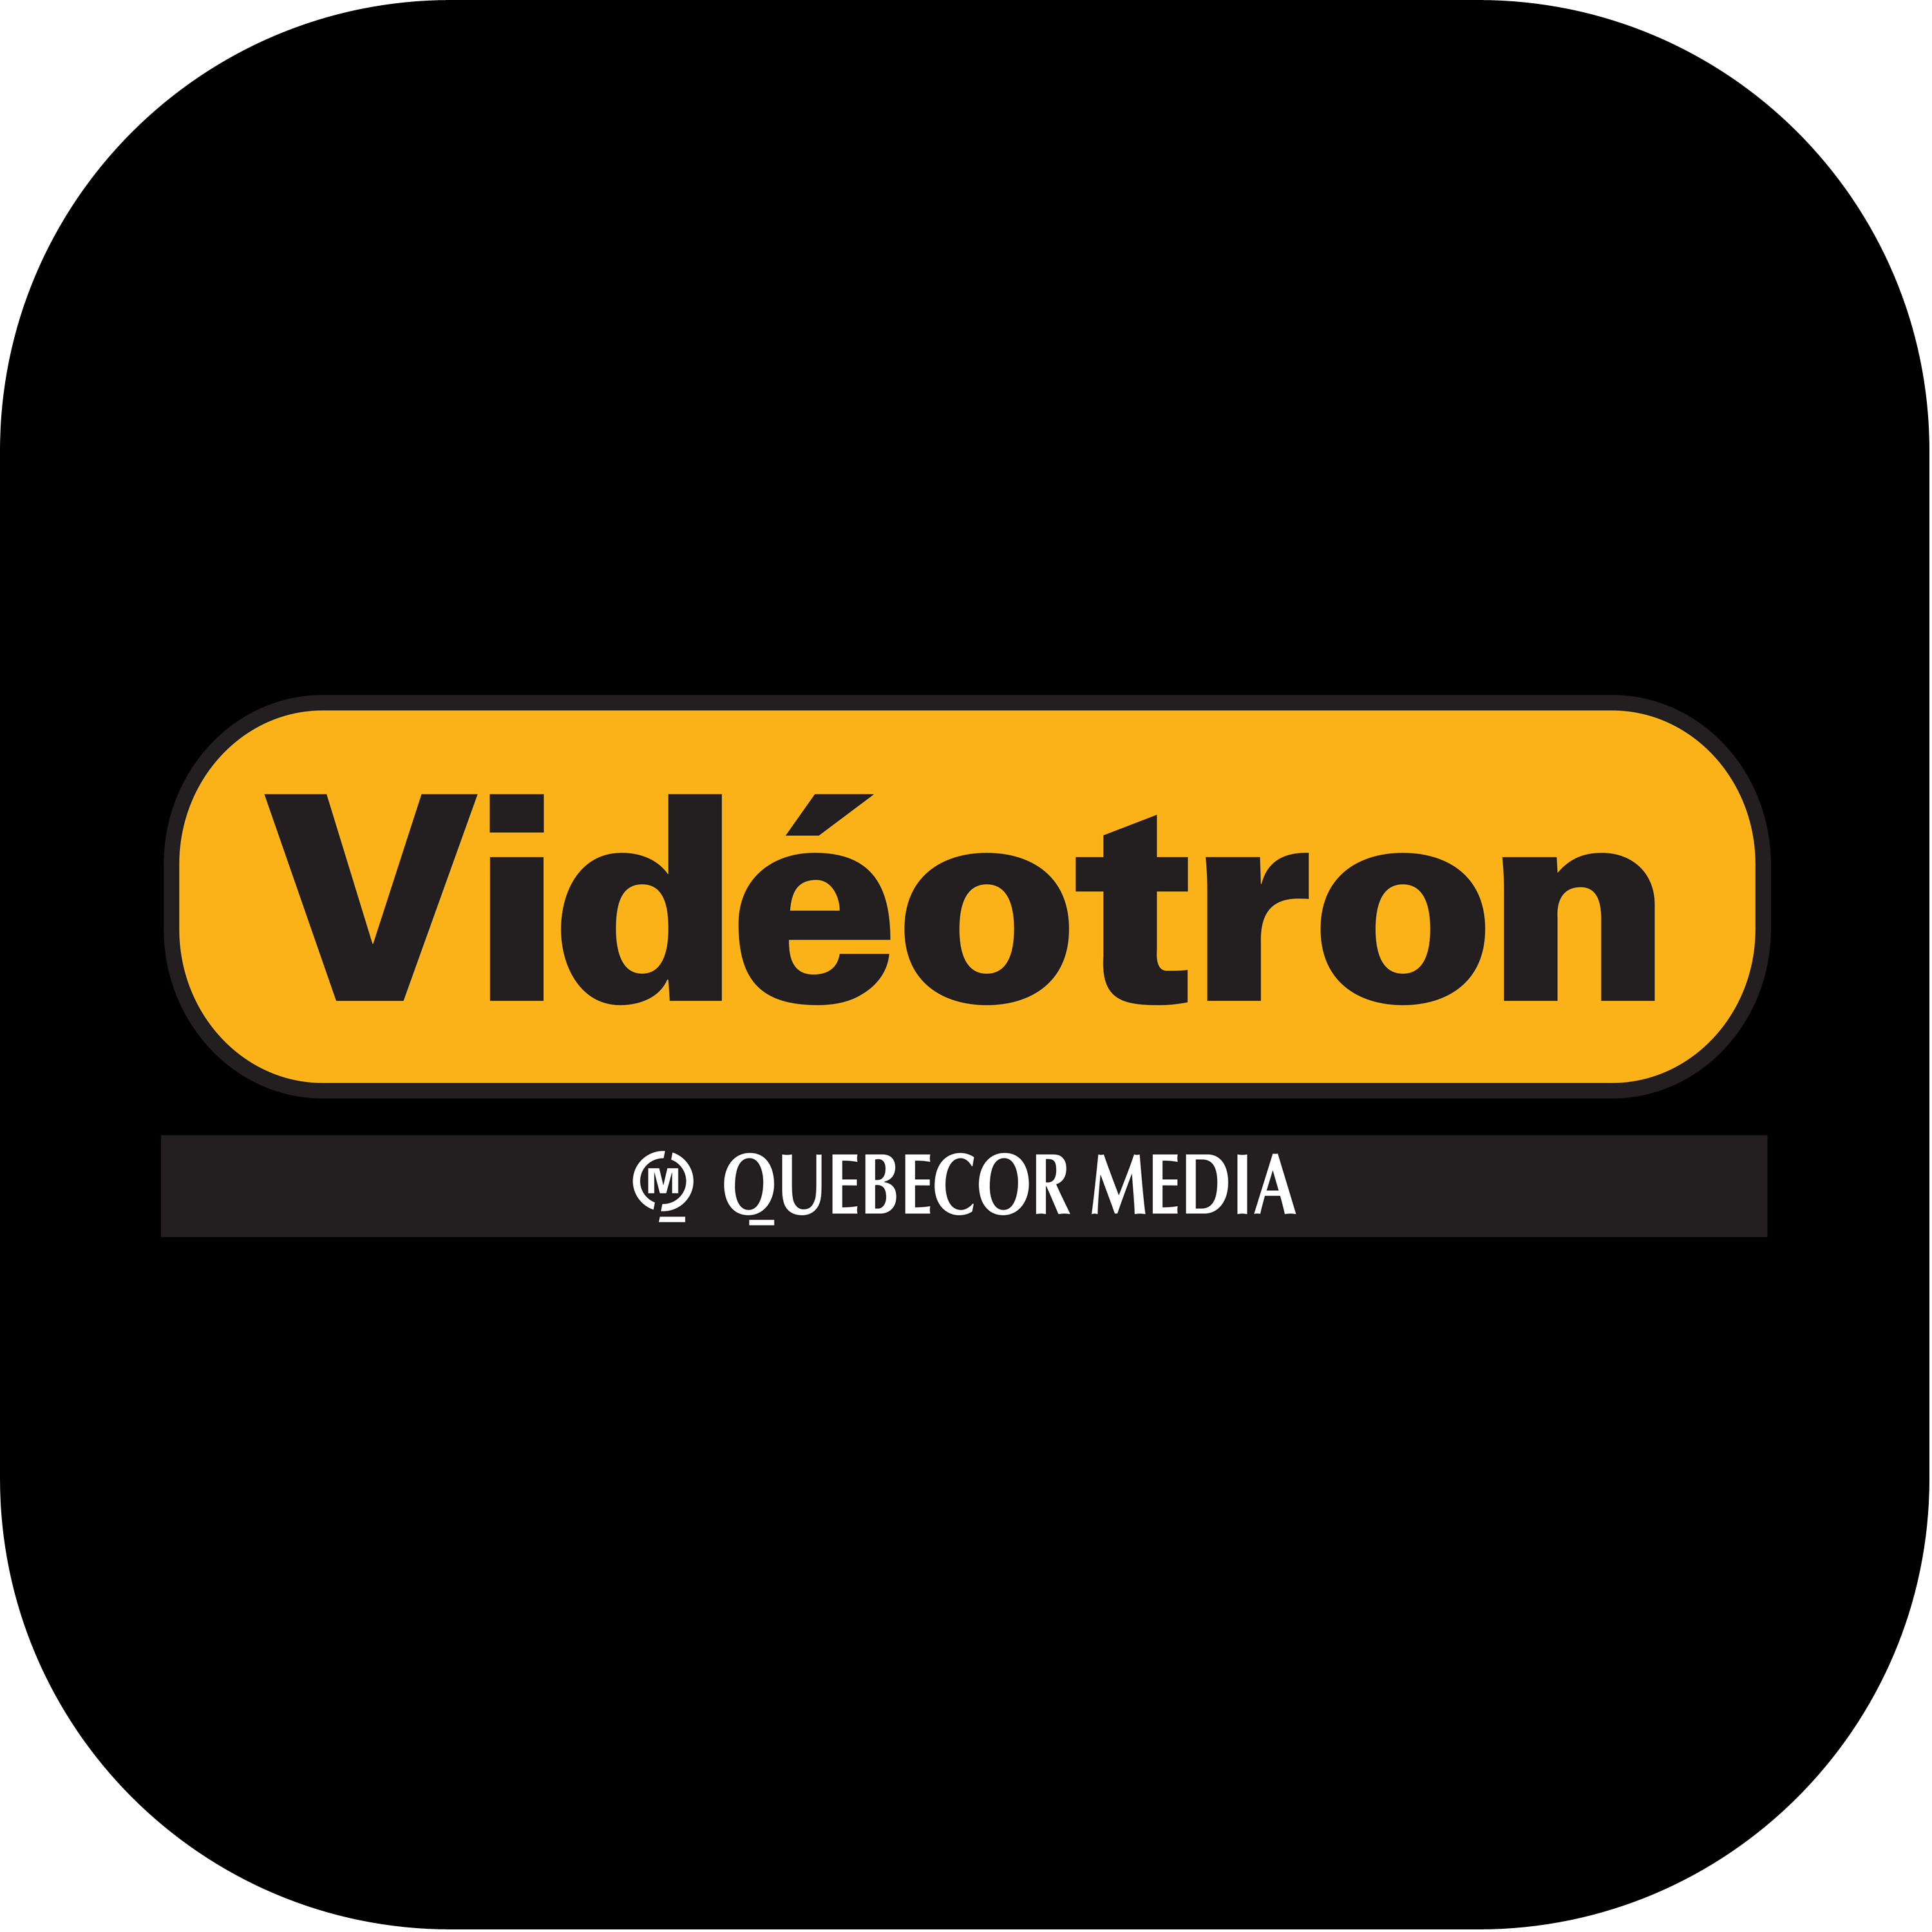 Videotron Logo 2002 Transparent Picture